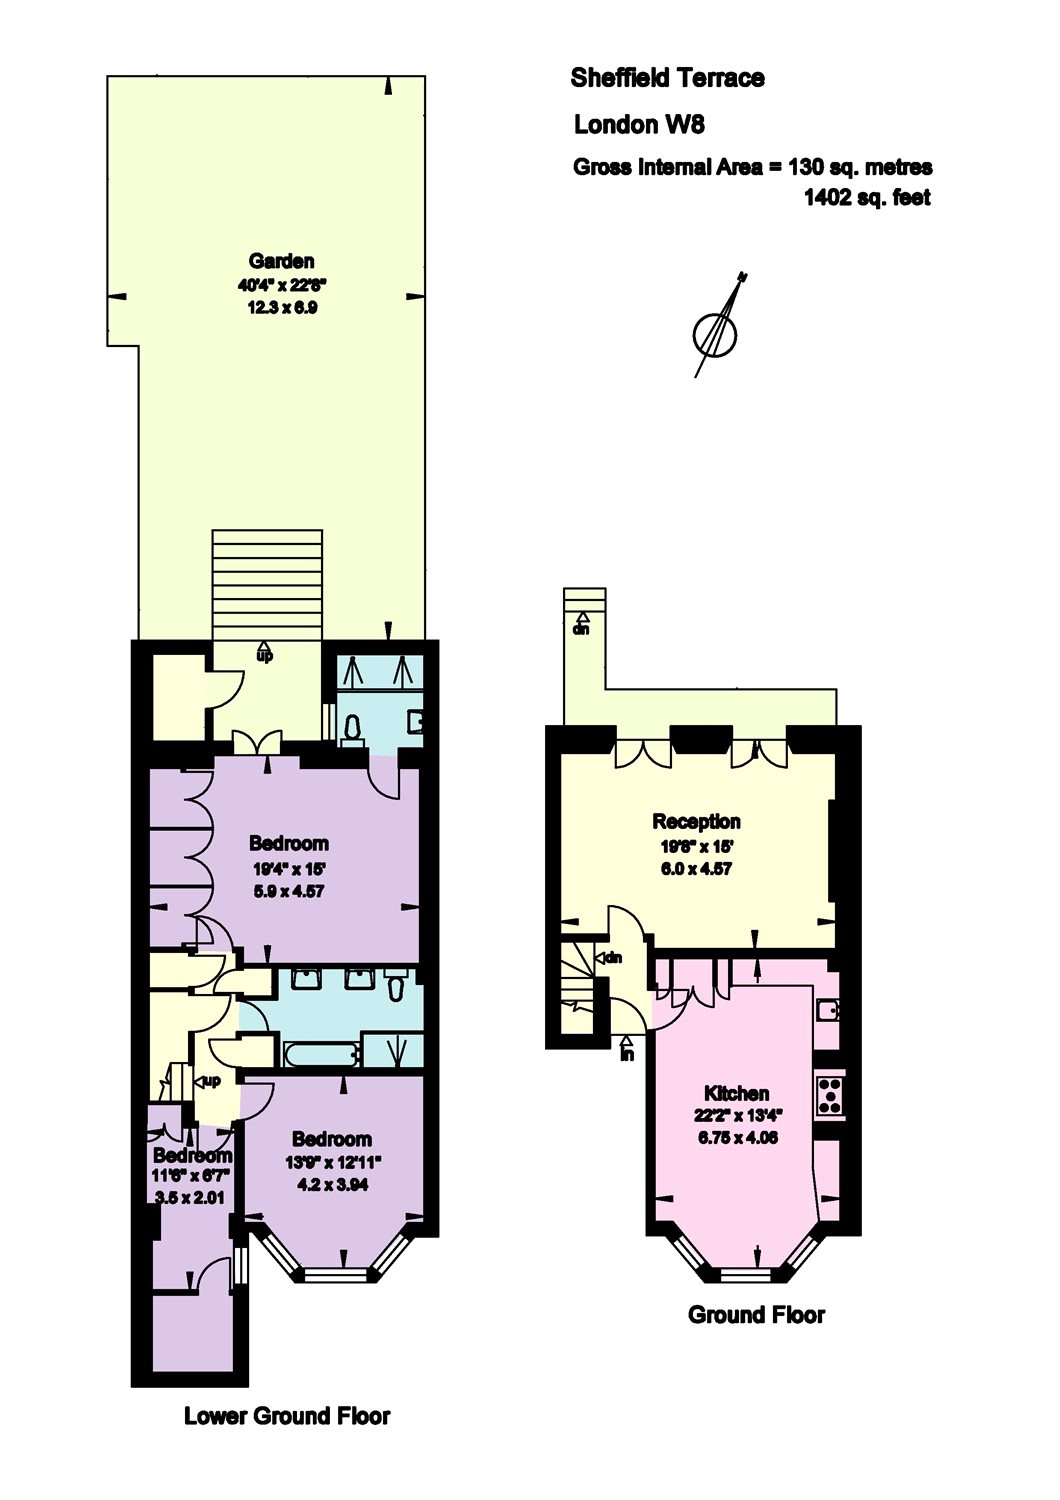 3 Bedrooms Flat to rent in Sheffield Terrace, London W8